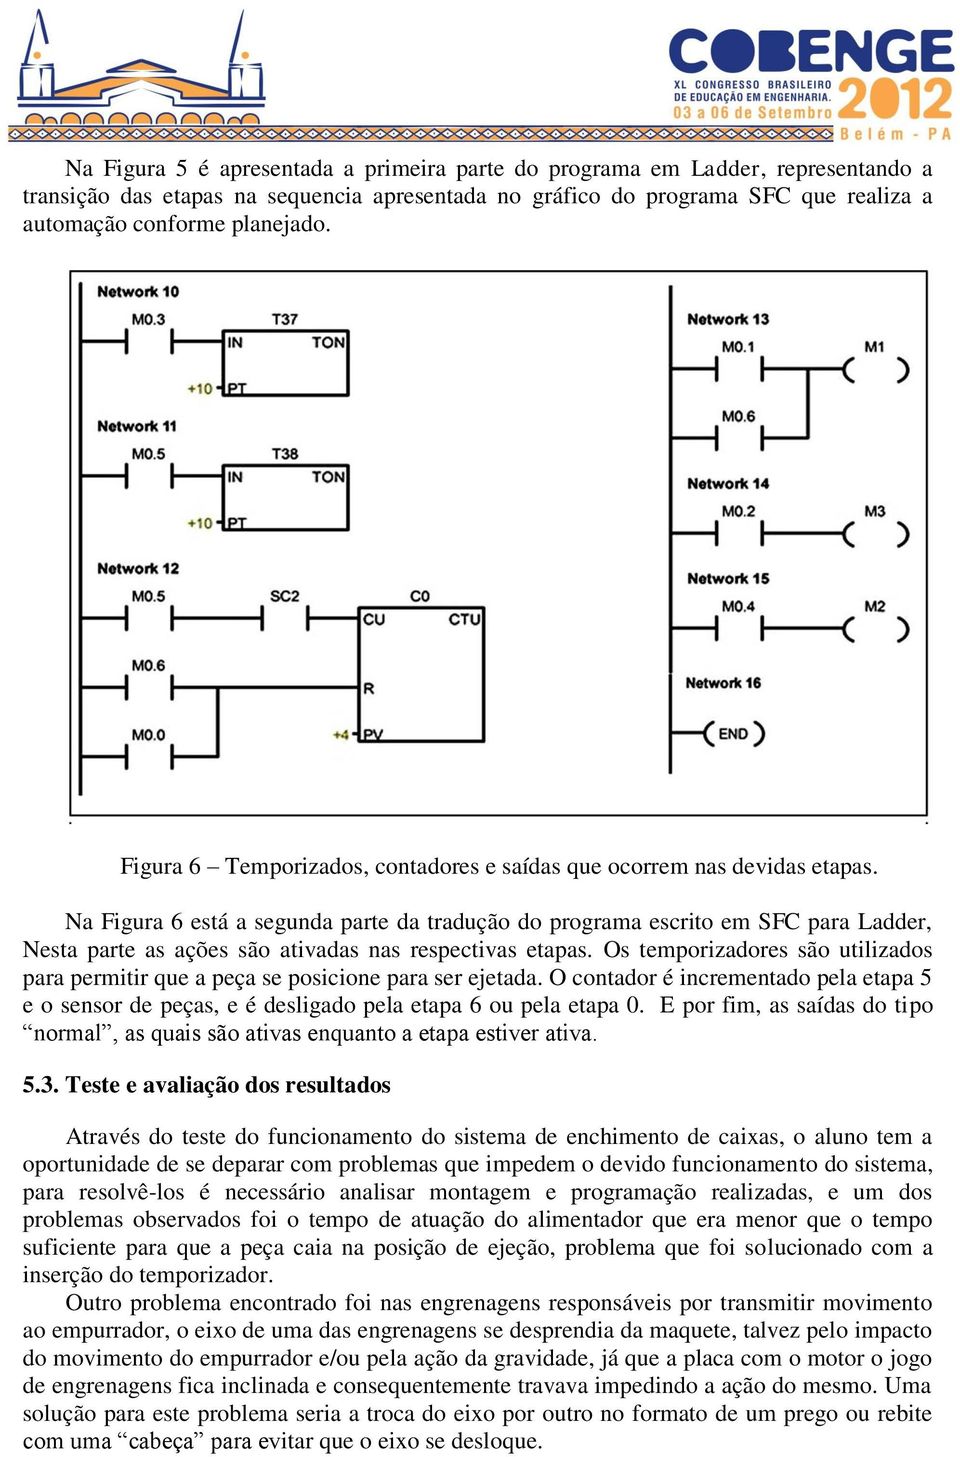 Na Figura 6 está a segunda parte da tradução do programa escrito em SFC para Ladder, Nesta parte as ações são ativadas nas respectivas etapas.